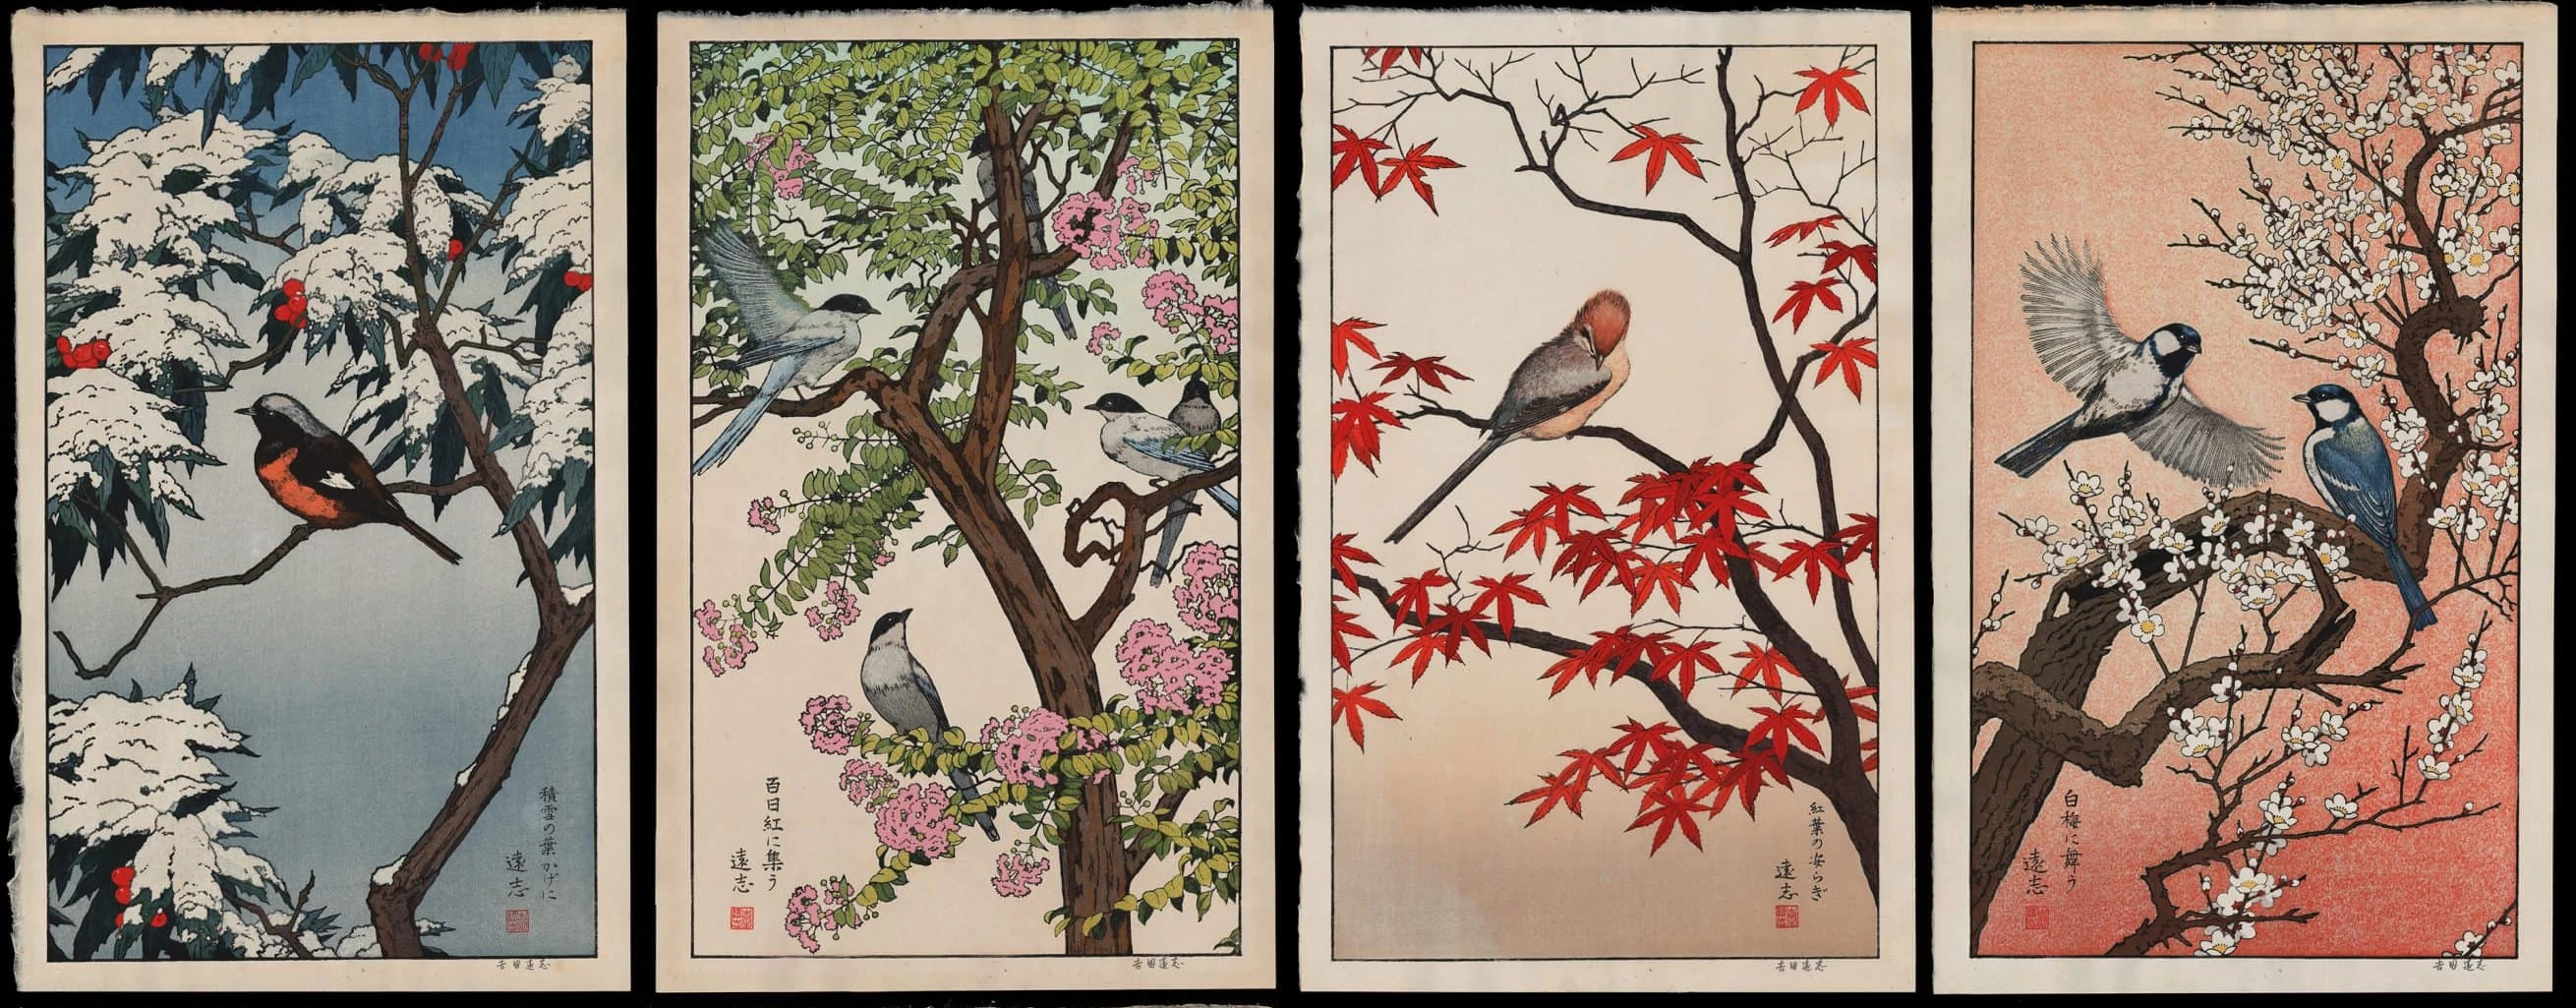 ../_images/toshi-yoshida-birds-of-the-seasons-set-of-four-horizontal.webp